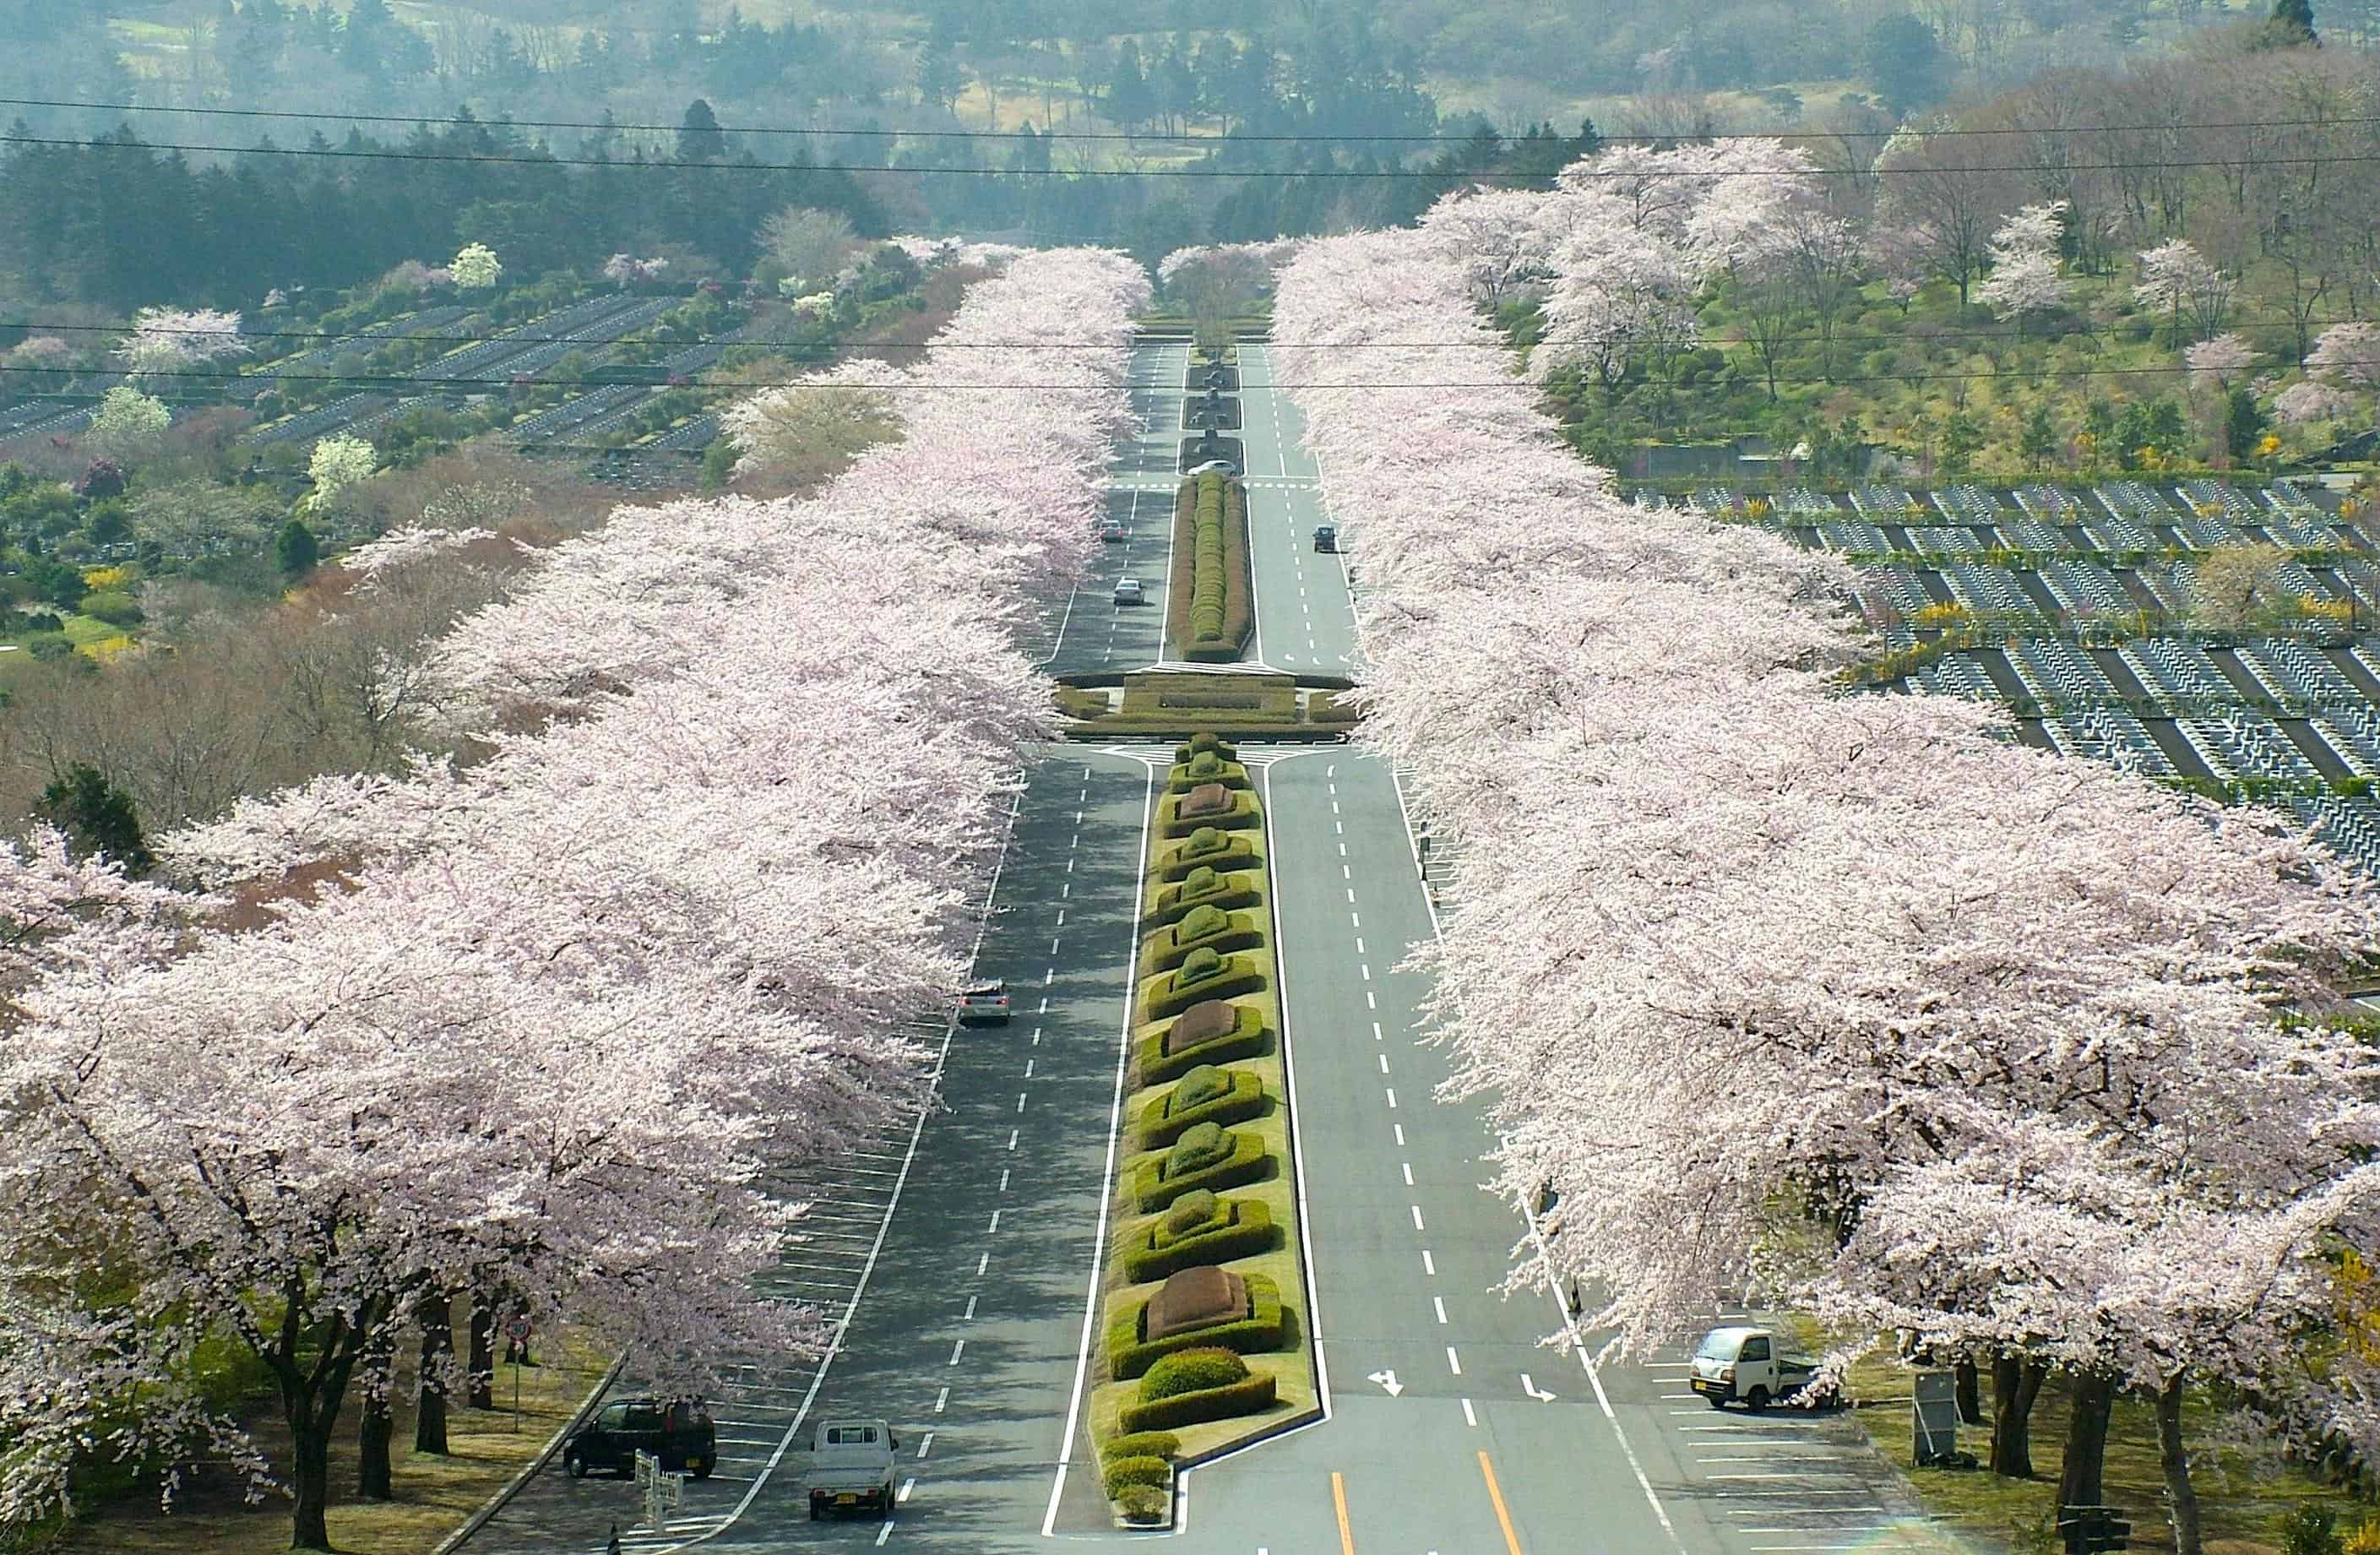 ซากุระ, ชมซากุระ, sakura, tokyo, Cherry blossom